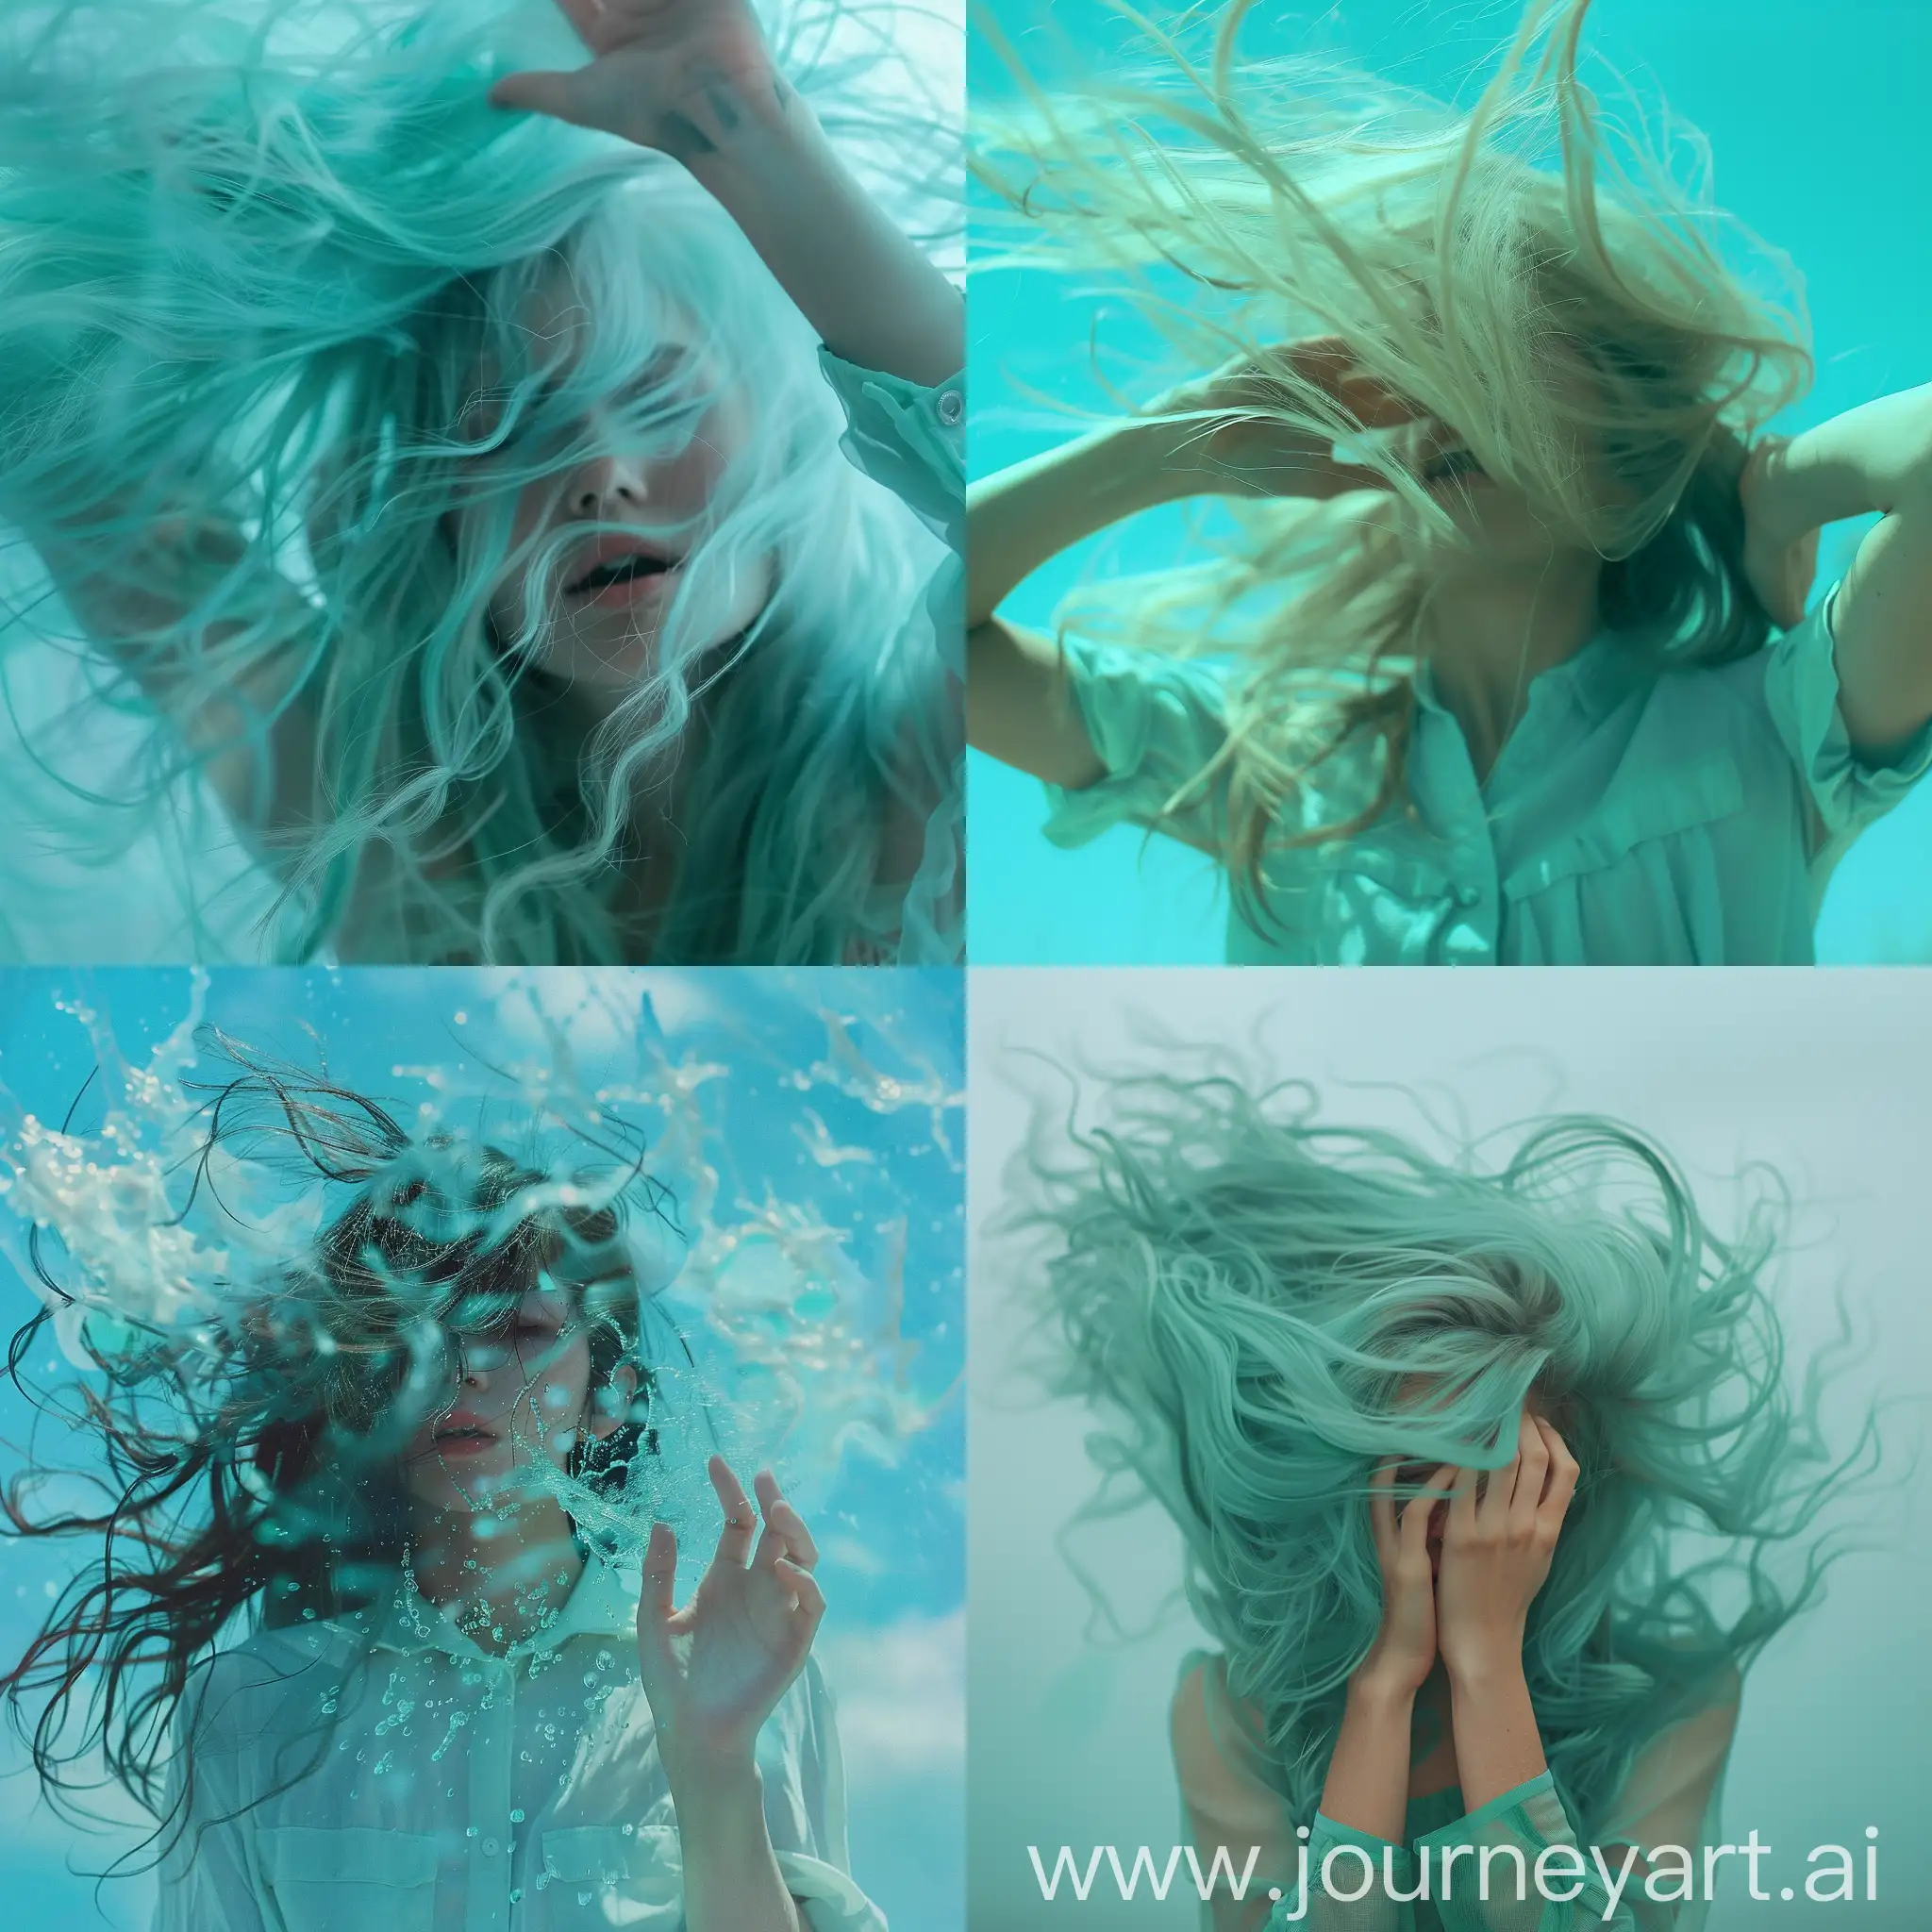 Воздух, ветер, девушка, волосы, руки, красота, эстетика, мятный, голубой